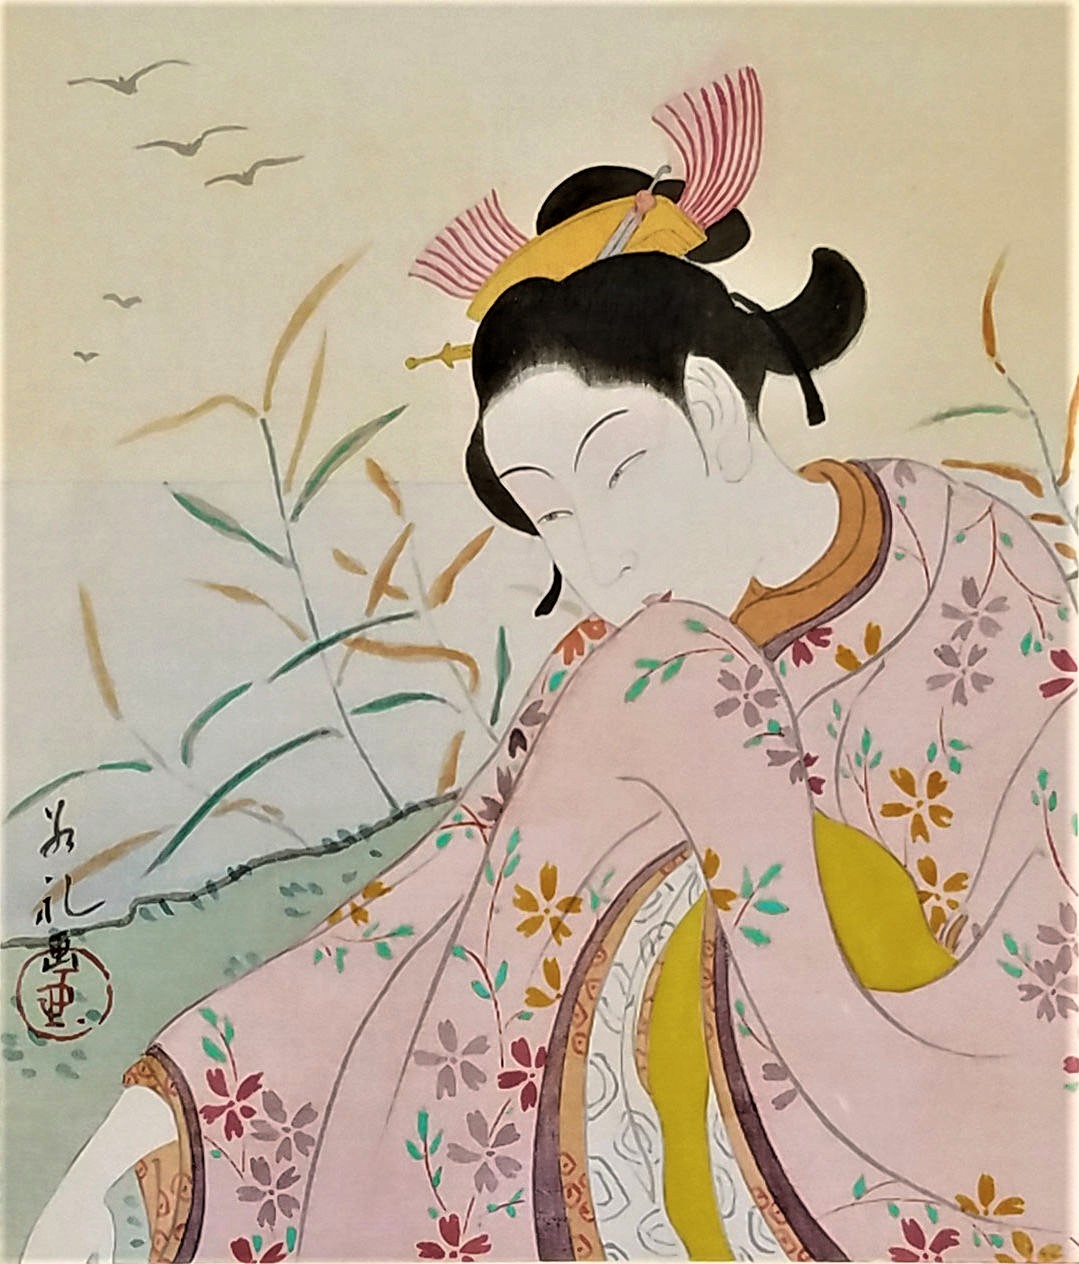 Au bas de cette aquarelle, on lit : « Geisha un peu grise. A Monsieur Coste… le 22 octobre 1928, Paul Jacoulet, Tokio ».